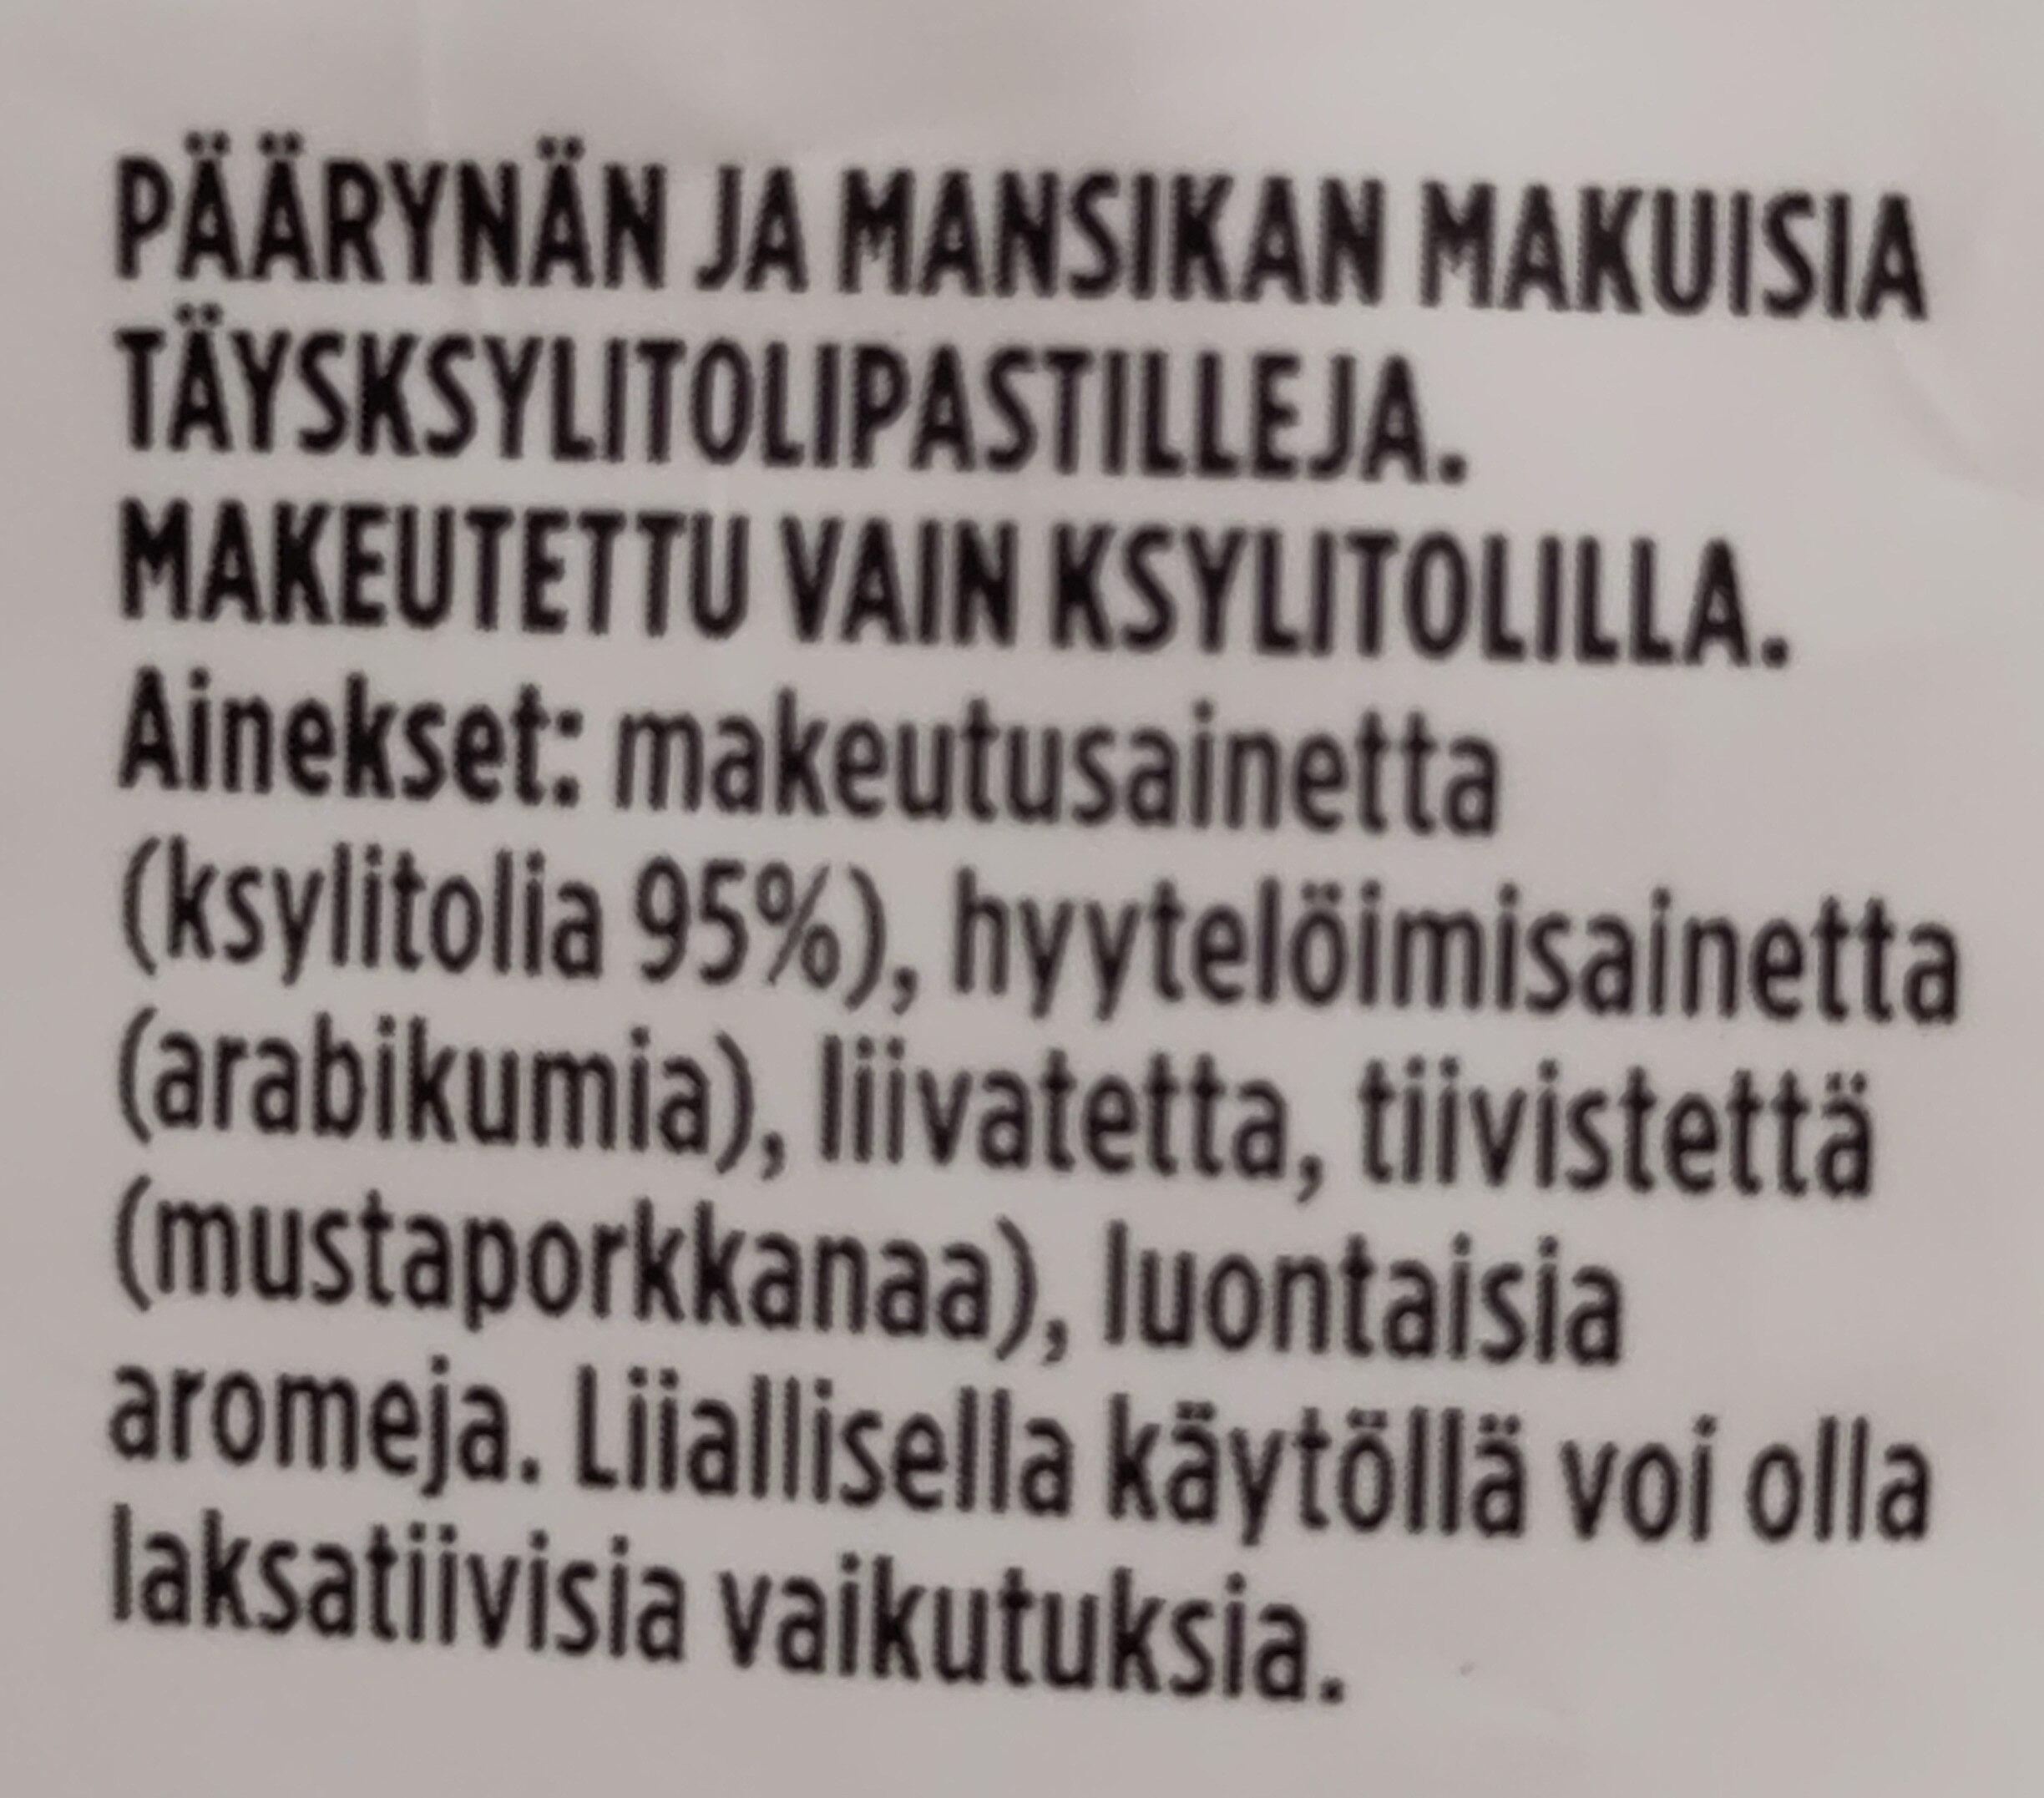 Herra Hakkaraisen Täysksylitolipastilli mansikka päärynä - Ainesosat - en